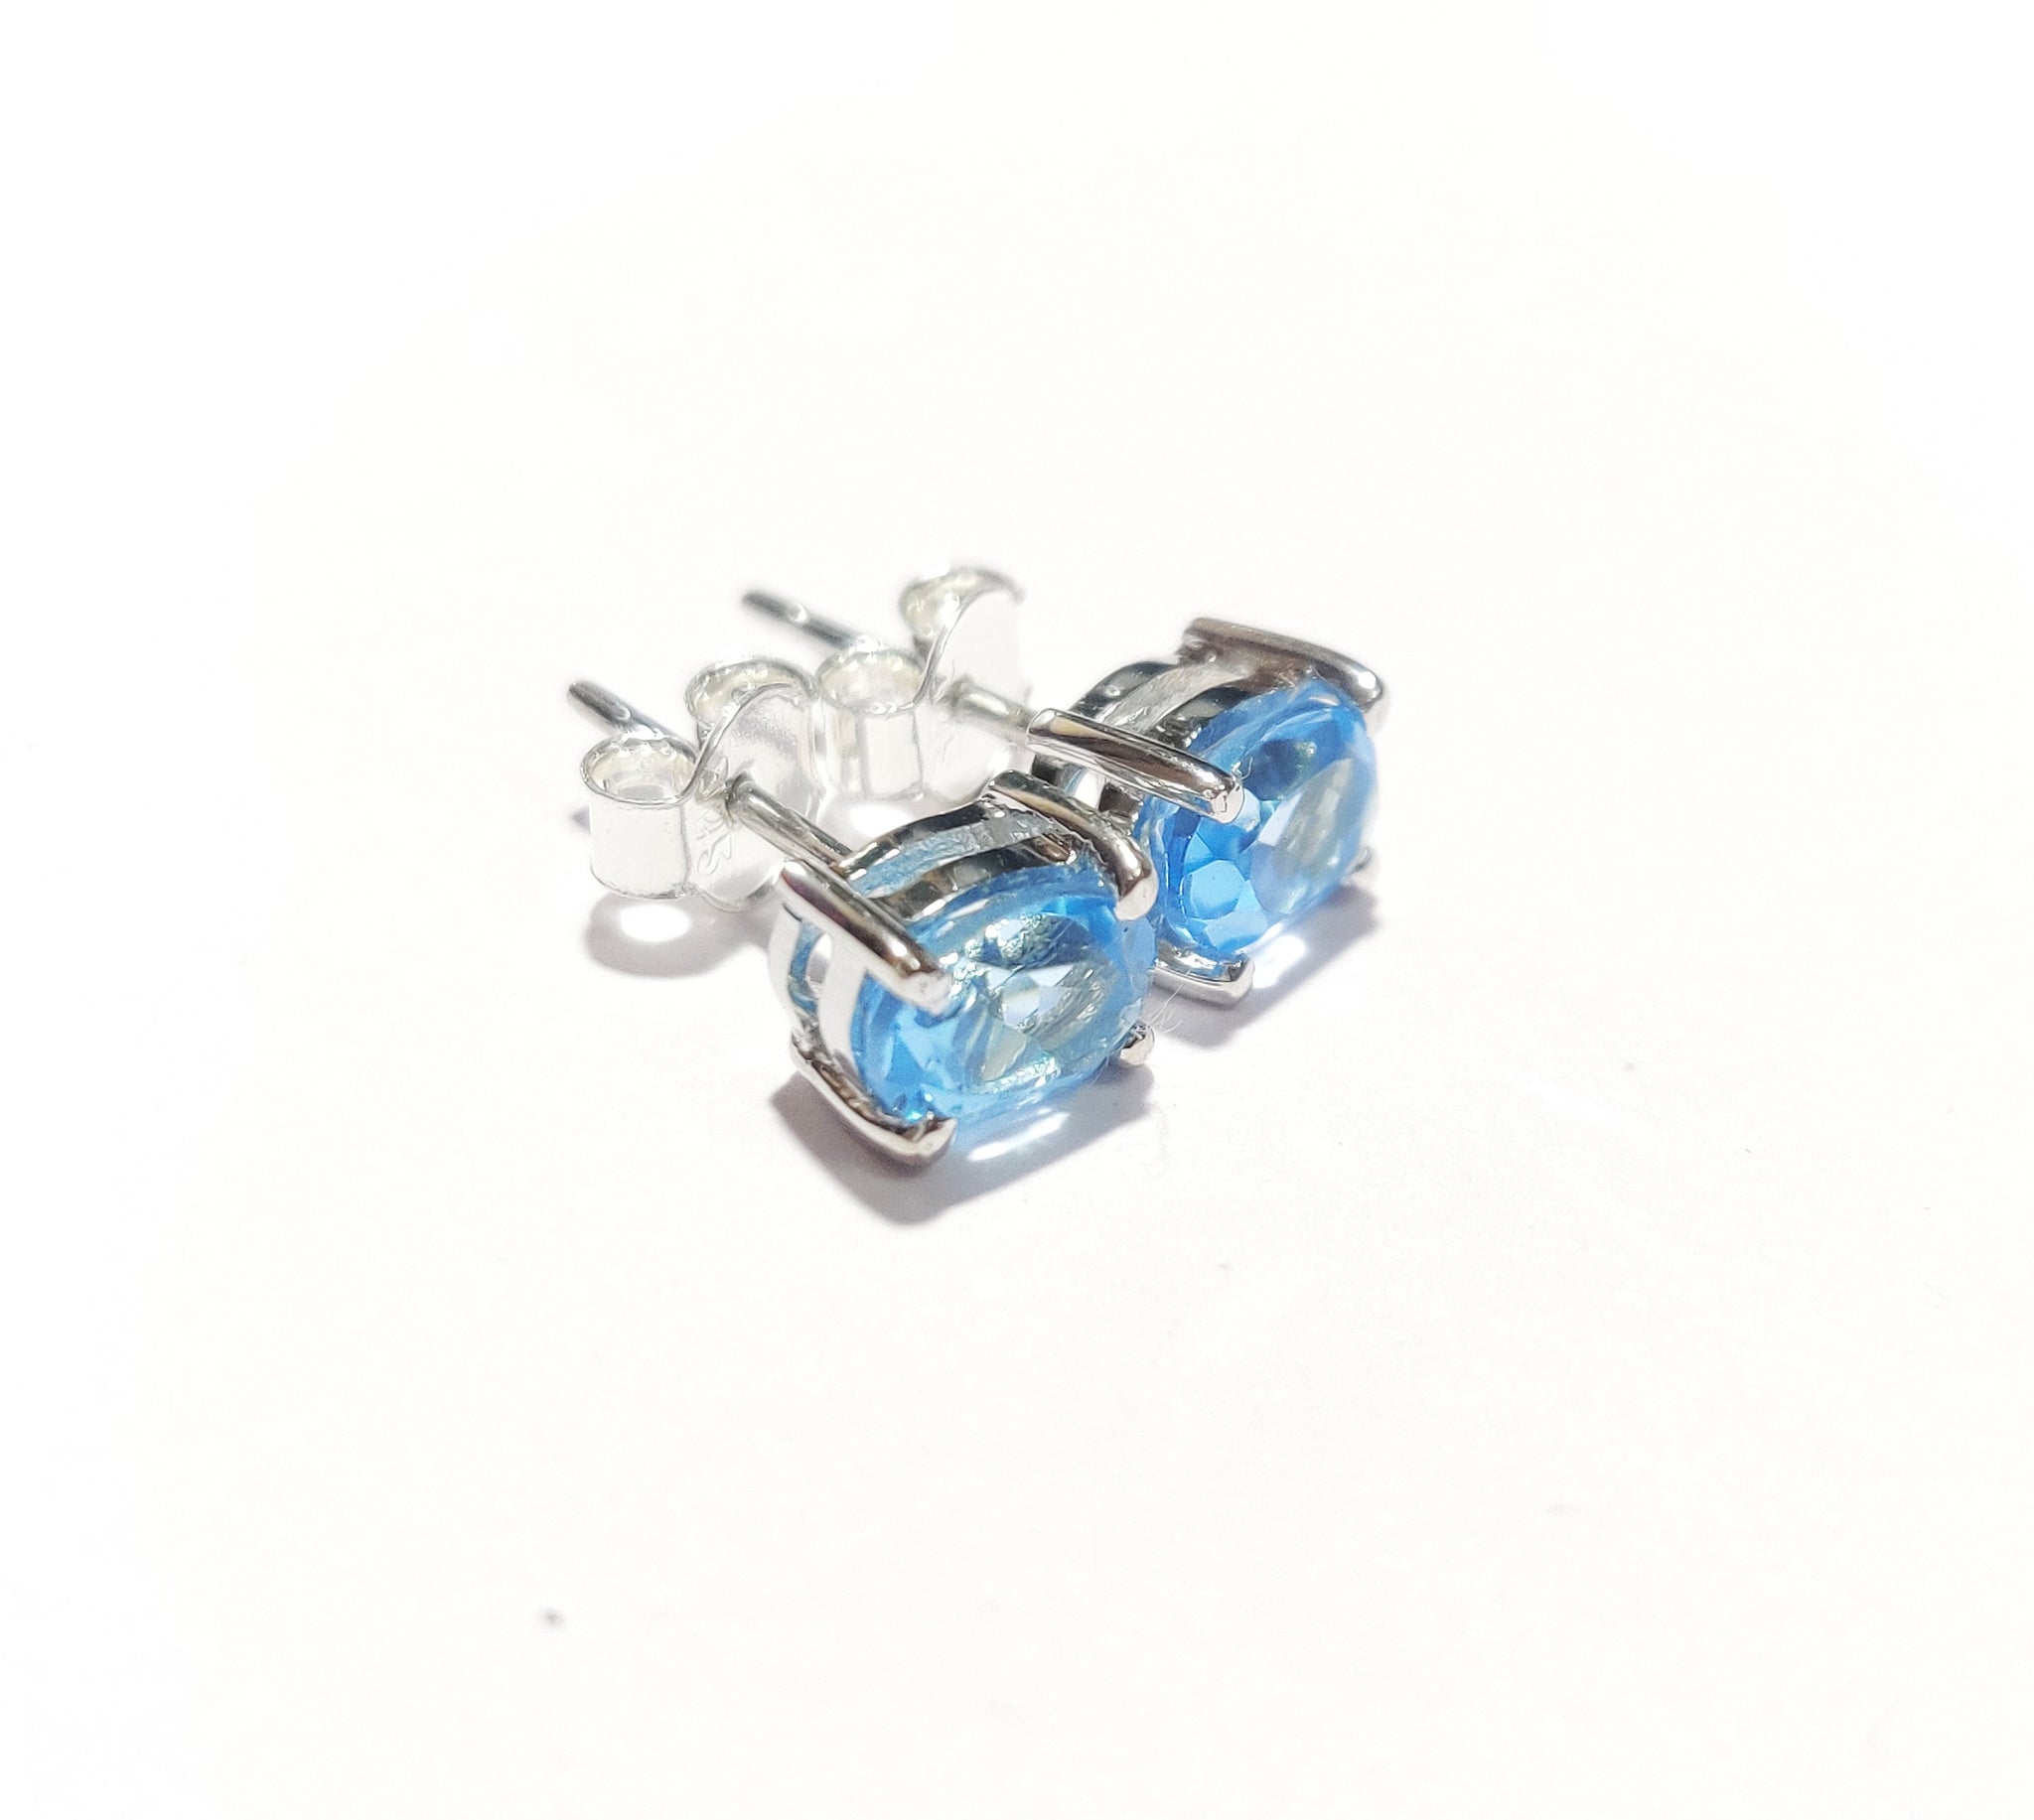 Silver Swiss Blue Topaz Stud Earrings 5x7 mm Oval 2.2 Ct Swiss Blue Topaz Ear Studs Birthstone Stud Earrings Genuine Blue Topaz Earring